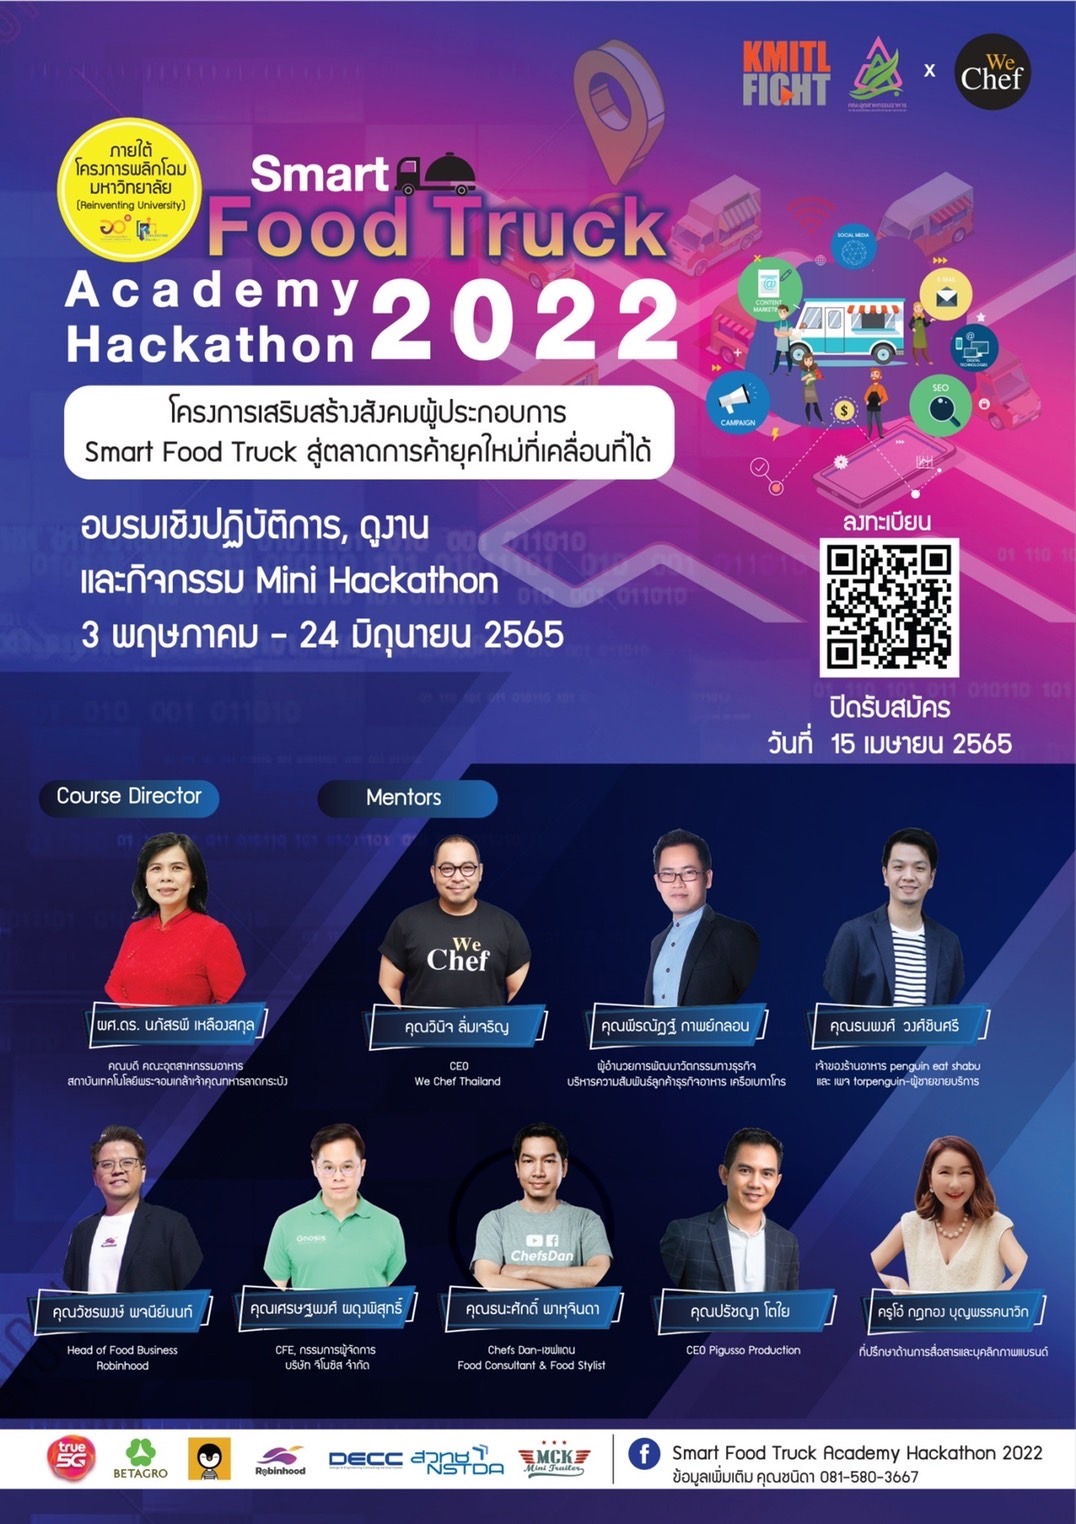 ogilvy thailand สมัคร งาน 2020